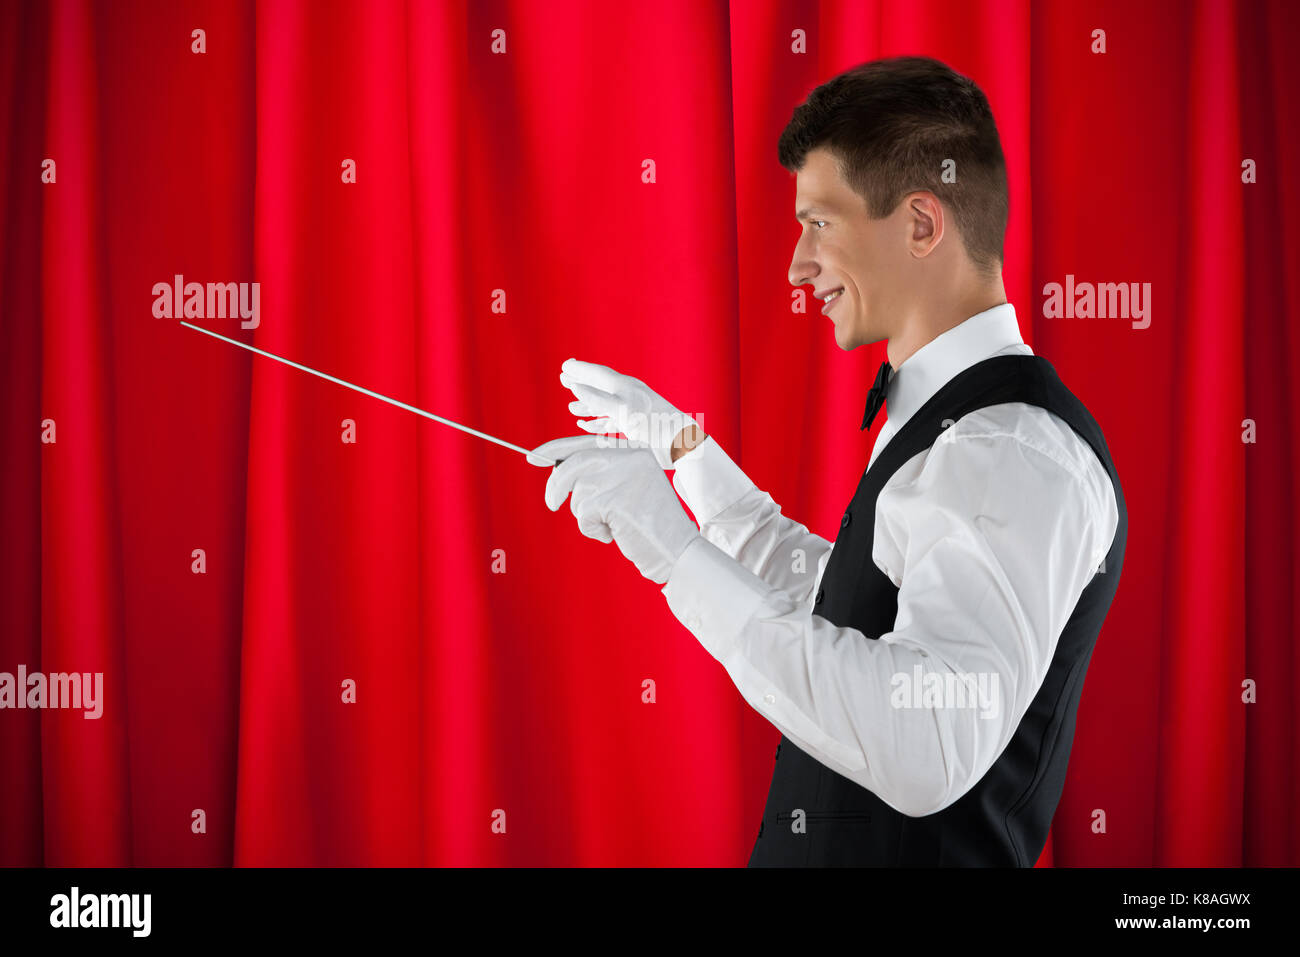 Männliche Orchester Dirigent Holding Baton über den roten Vorhang Stockfoto